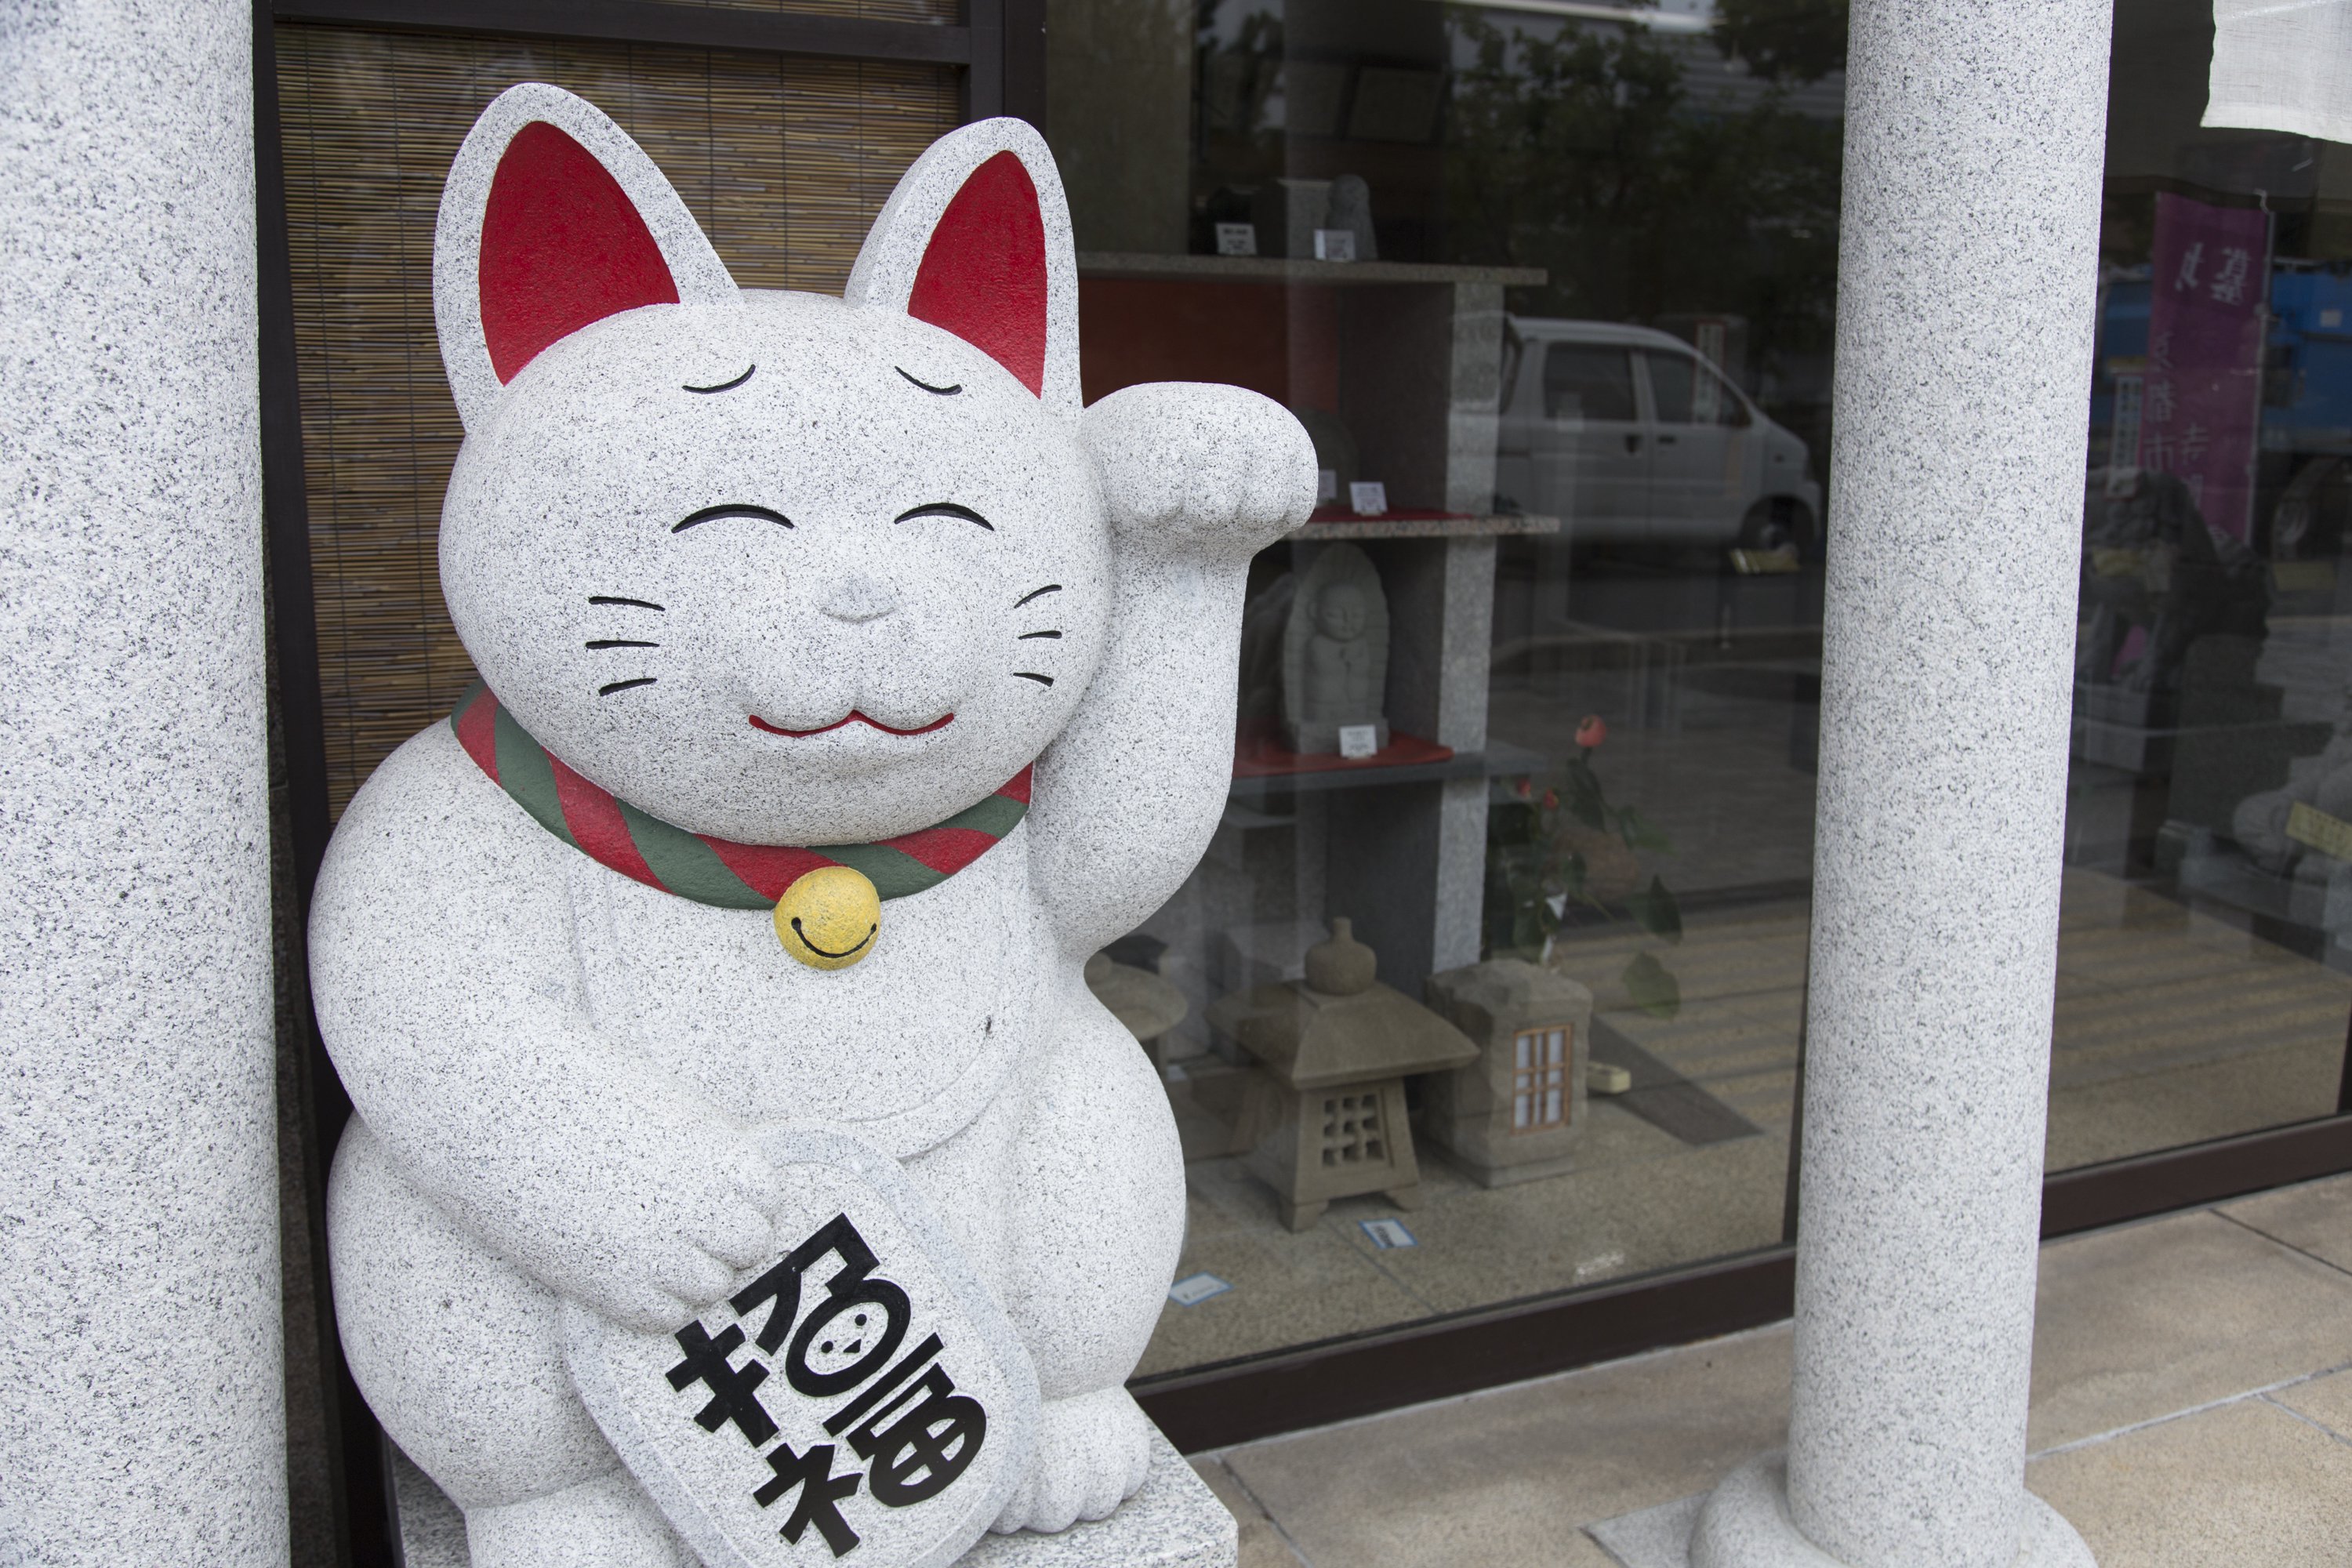 石材技能士による手彫りの石の招き猫「ニャーニャン」| Japanese Stone Maneki-Neko (beckoning cat)